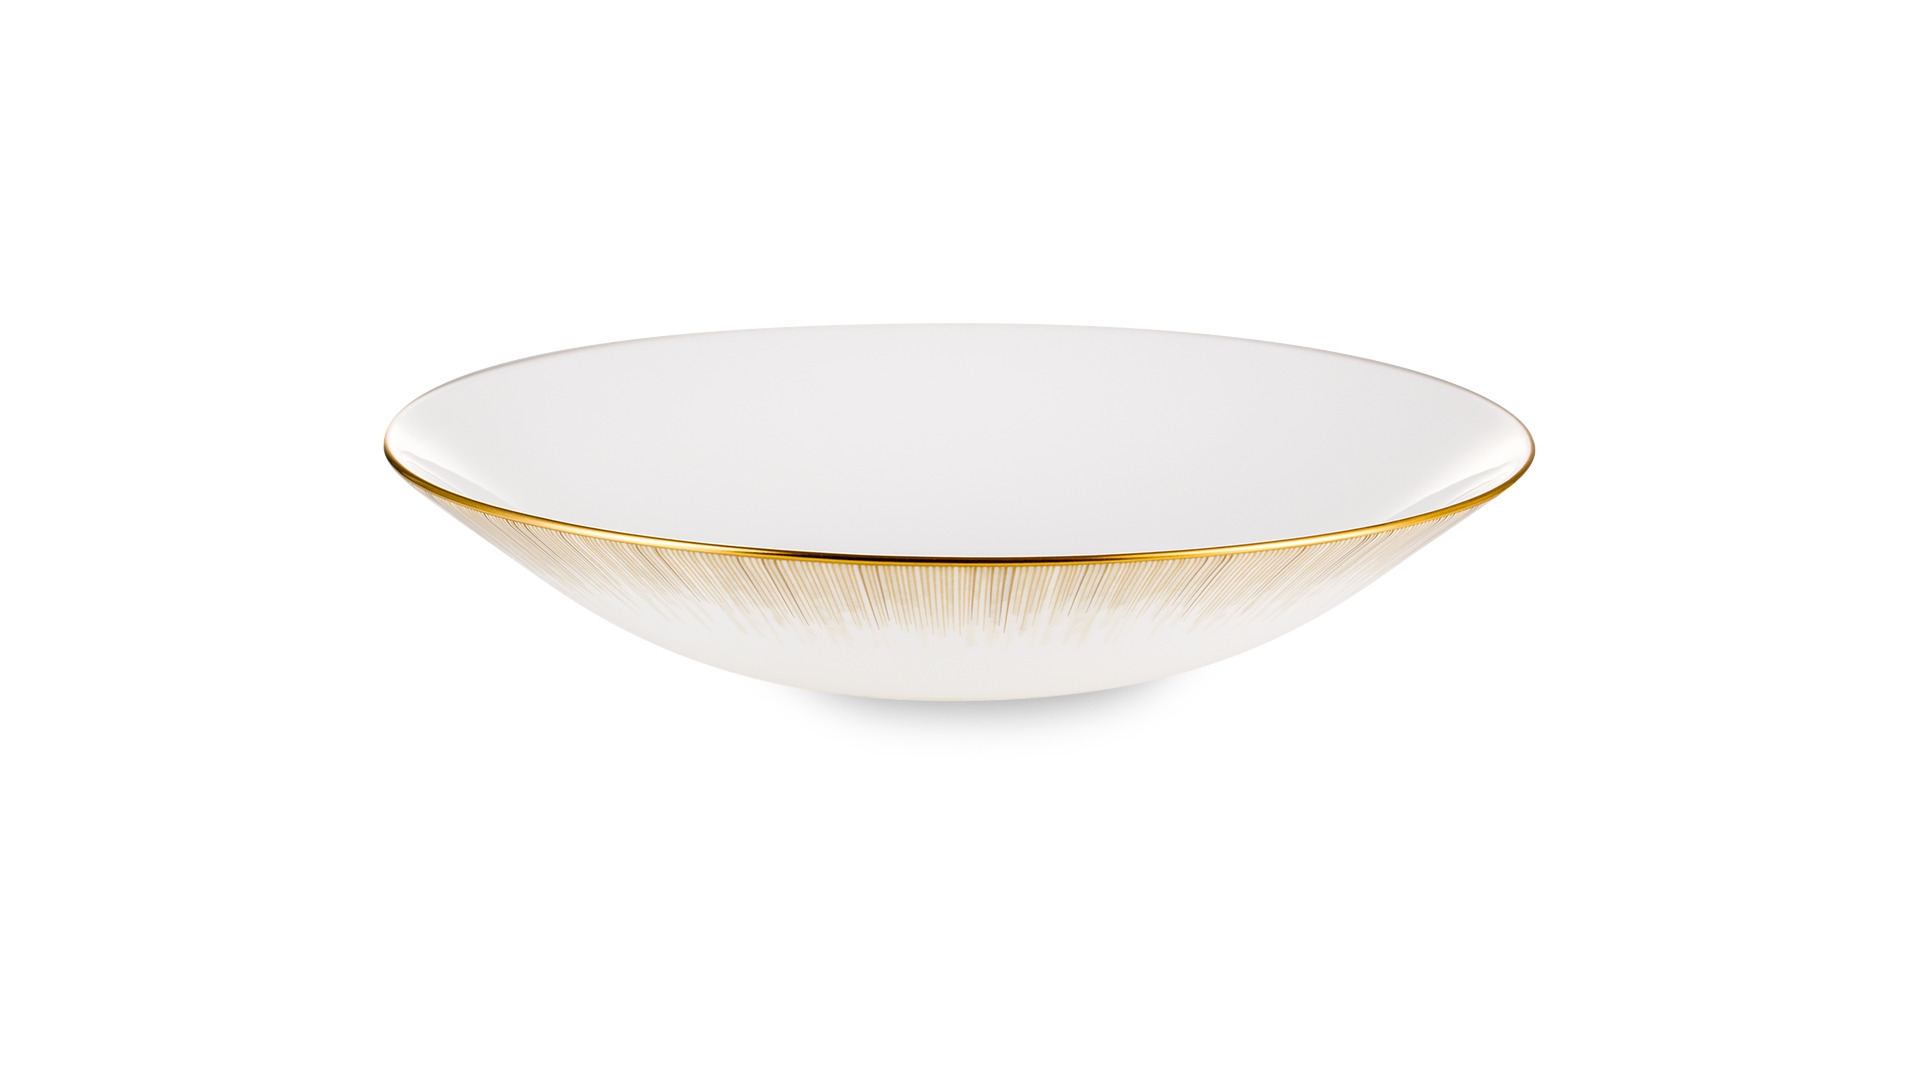 Тарелка суповая Narumi Сверкающее Золото 23 см, фарфор костяной